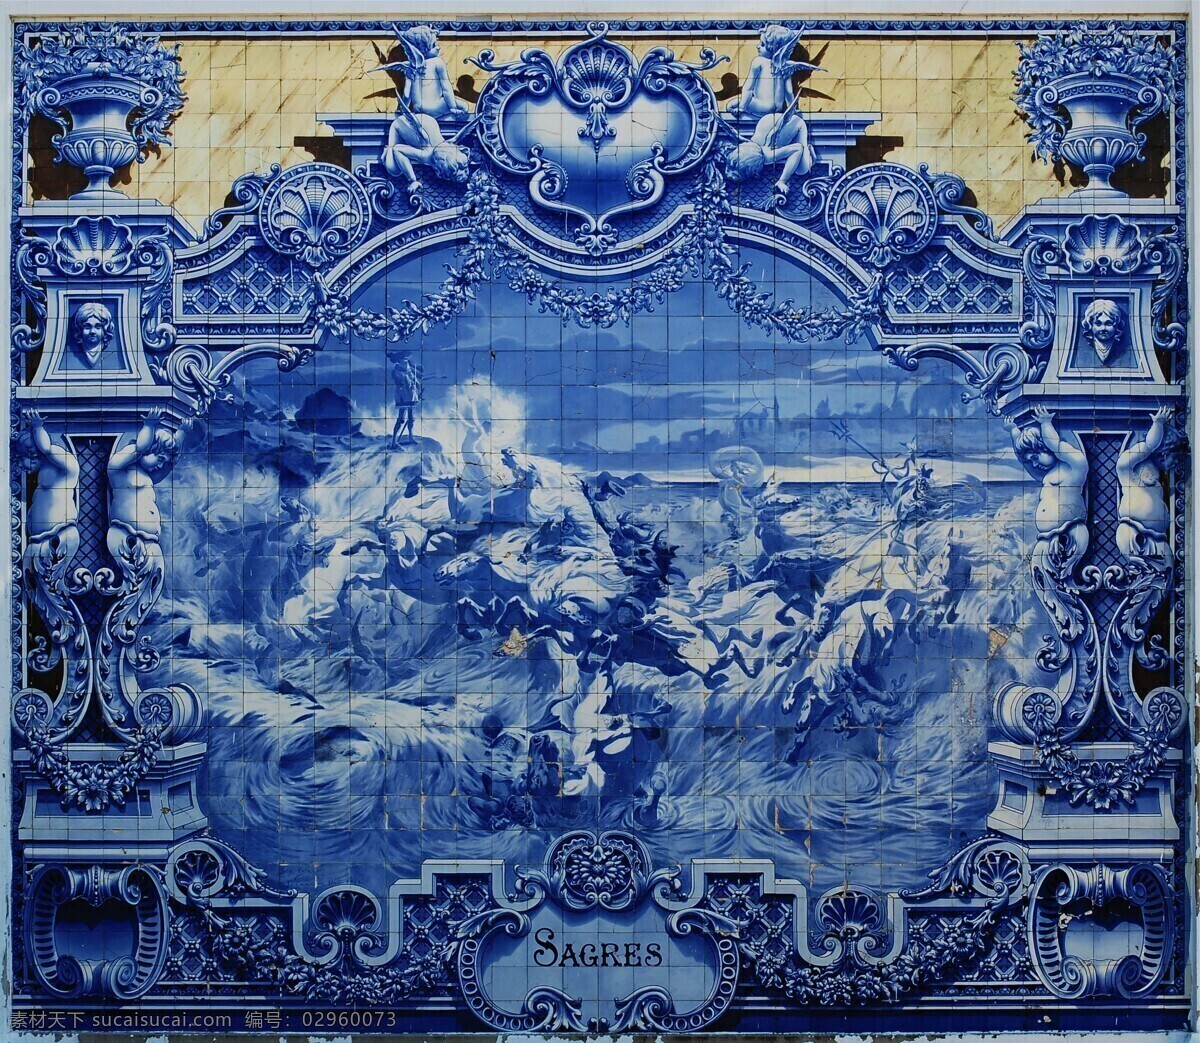 葡萄牙 瓷砖 画 传统文化 雕刻 雕像 风景 花纹 人物 文化艺术 葡萄牙瓷砖画 艺术品 瓷砖画 马匹 装饰素材 室内装饰用图